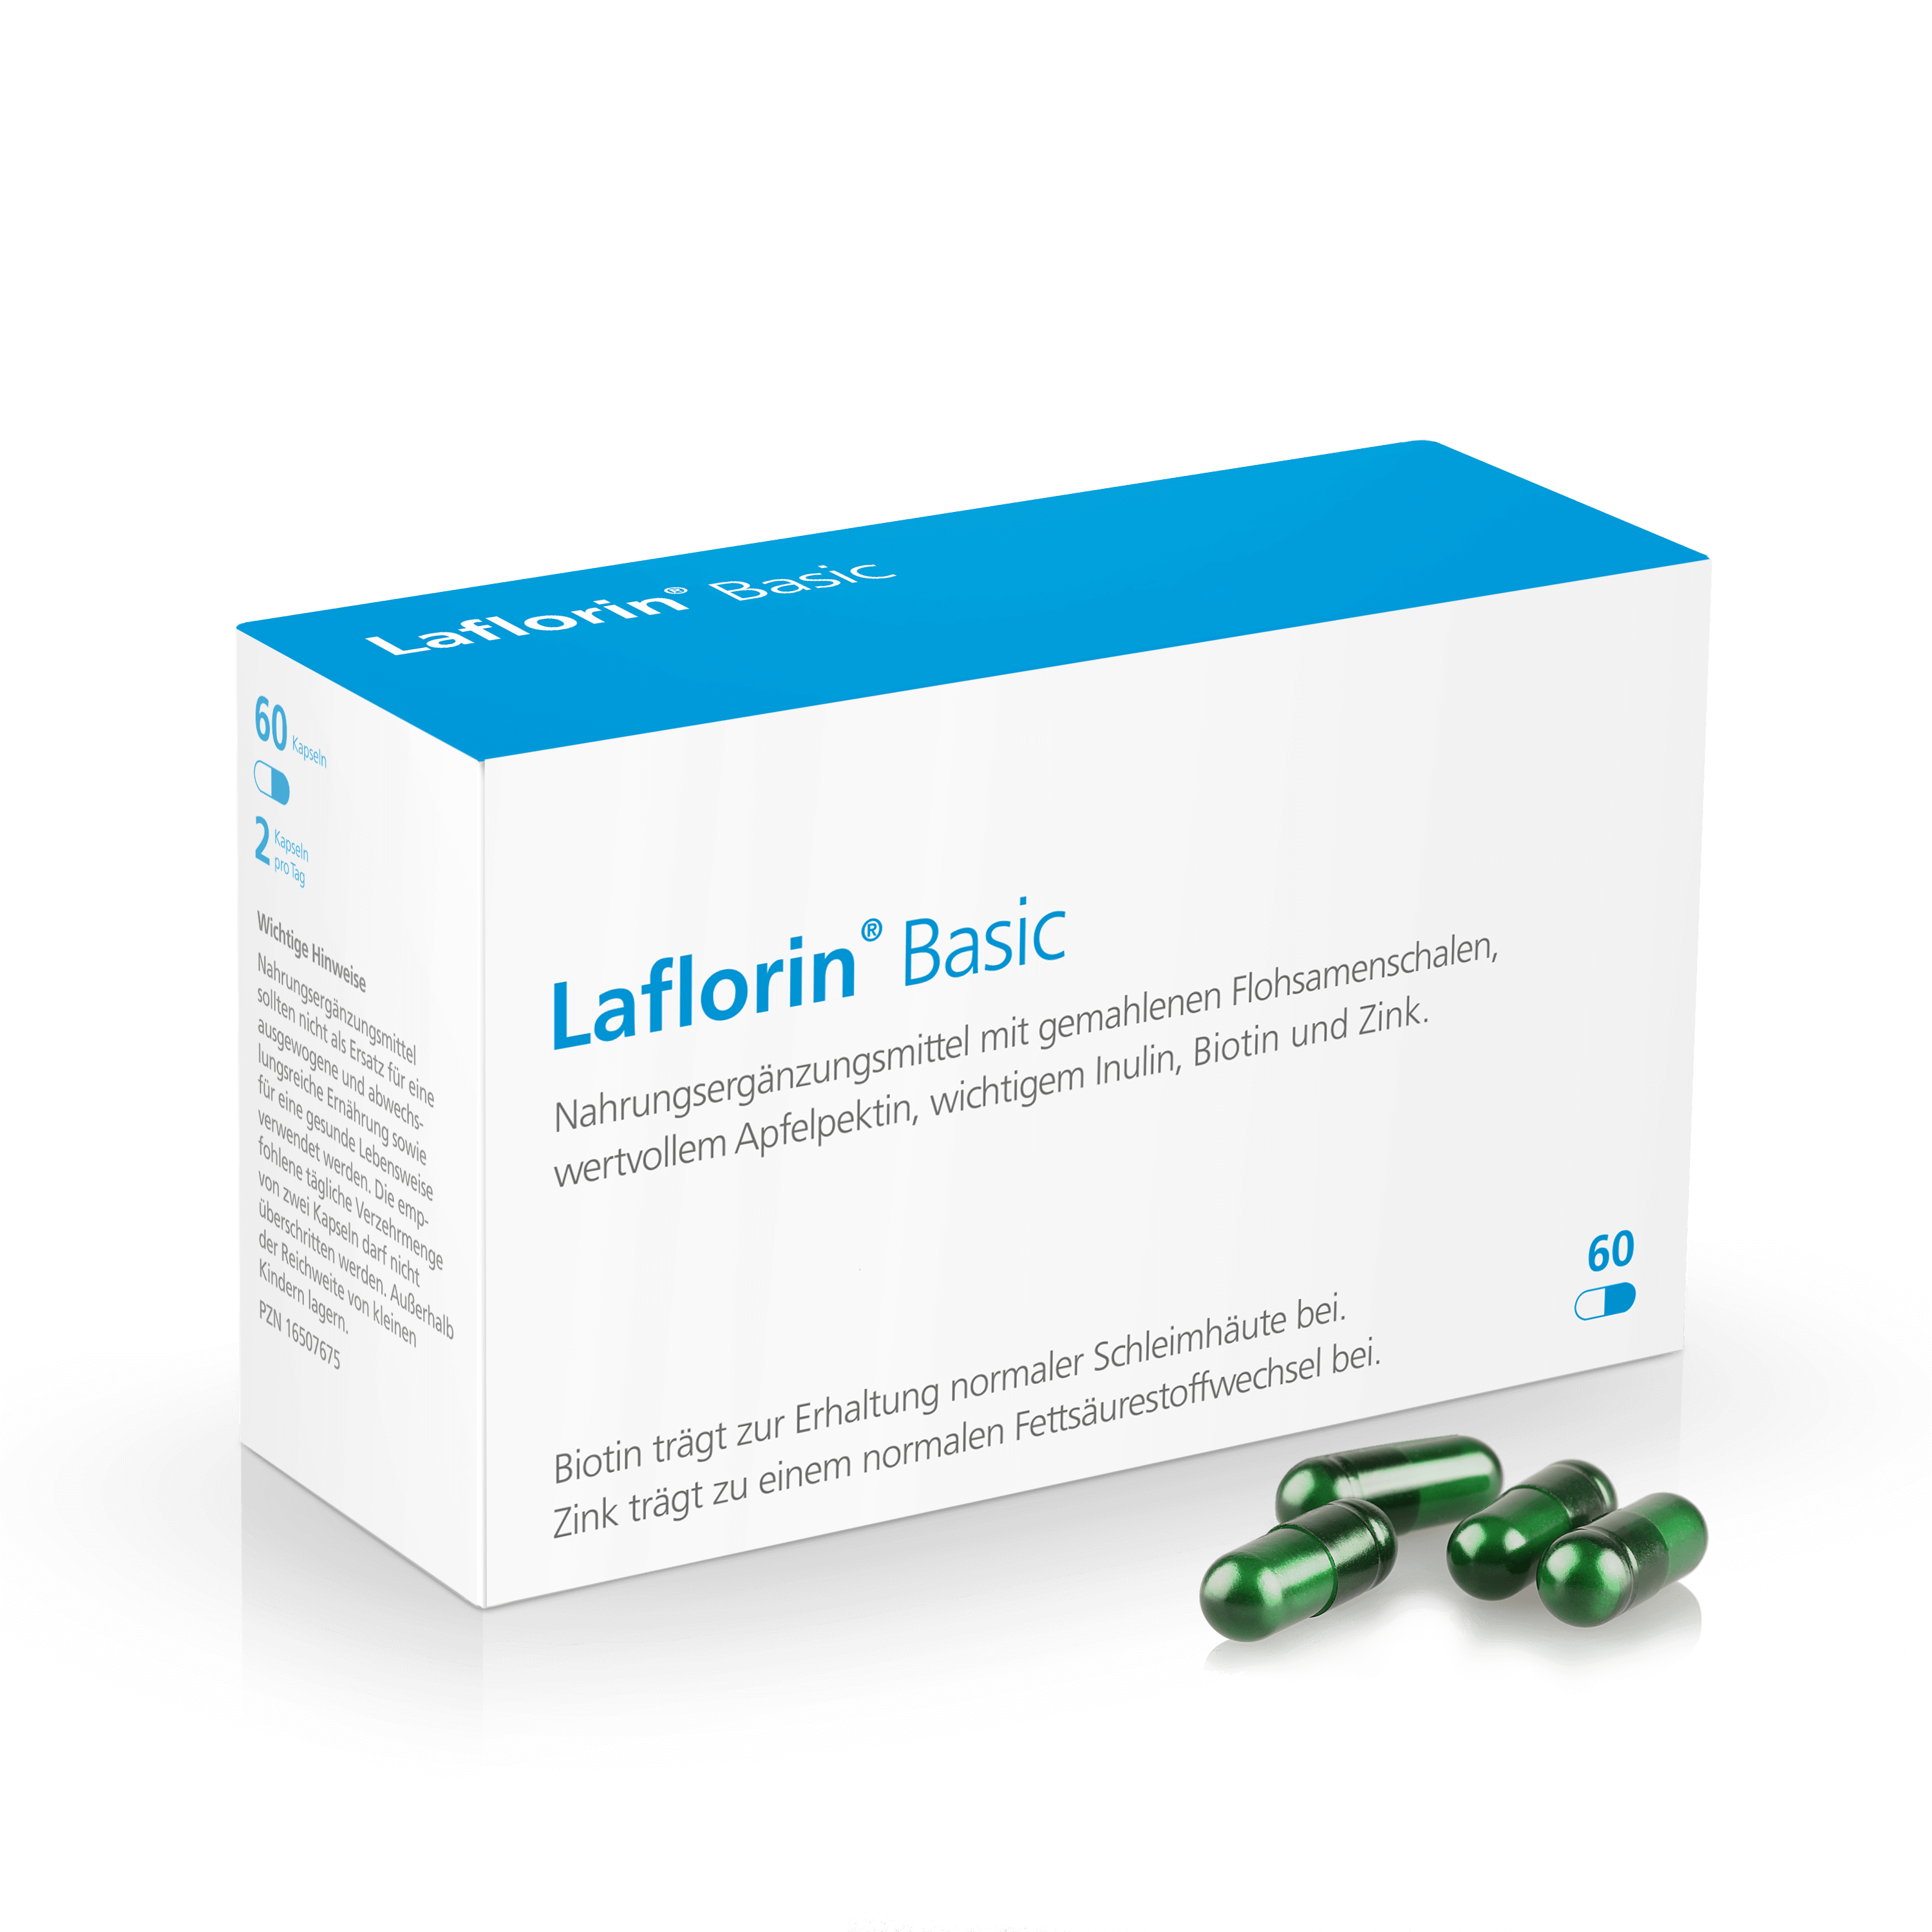 Laflorin Basic